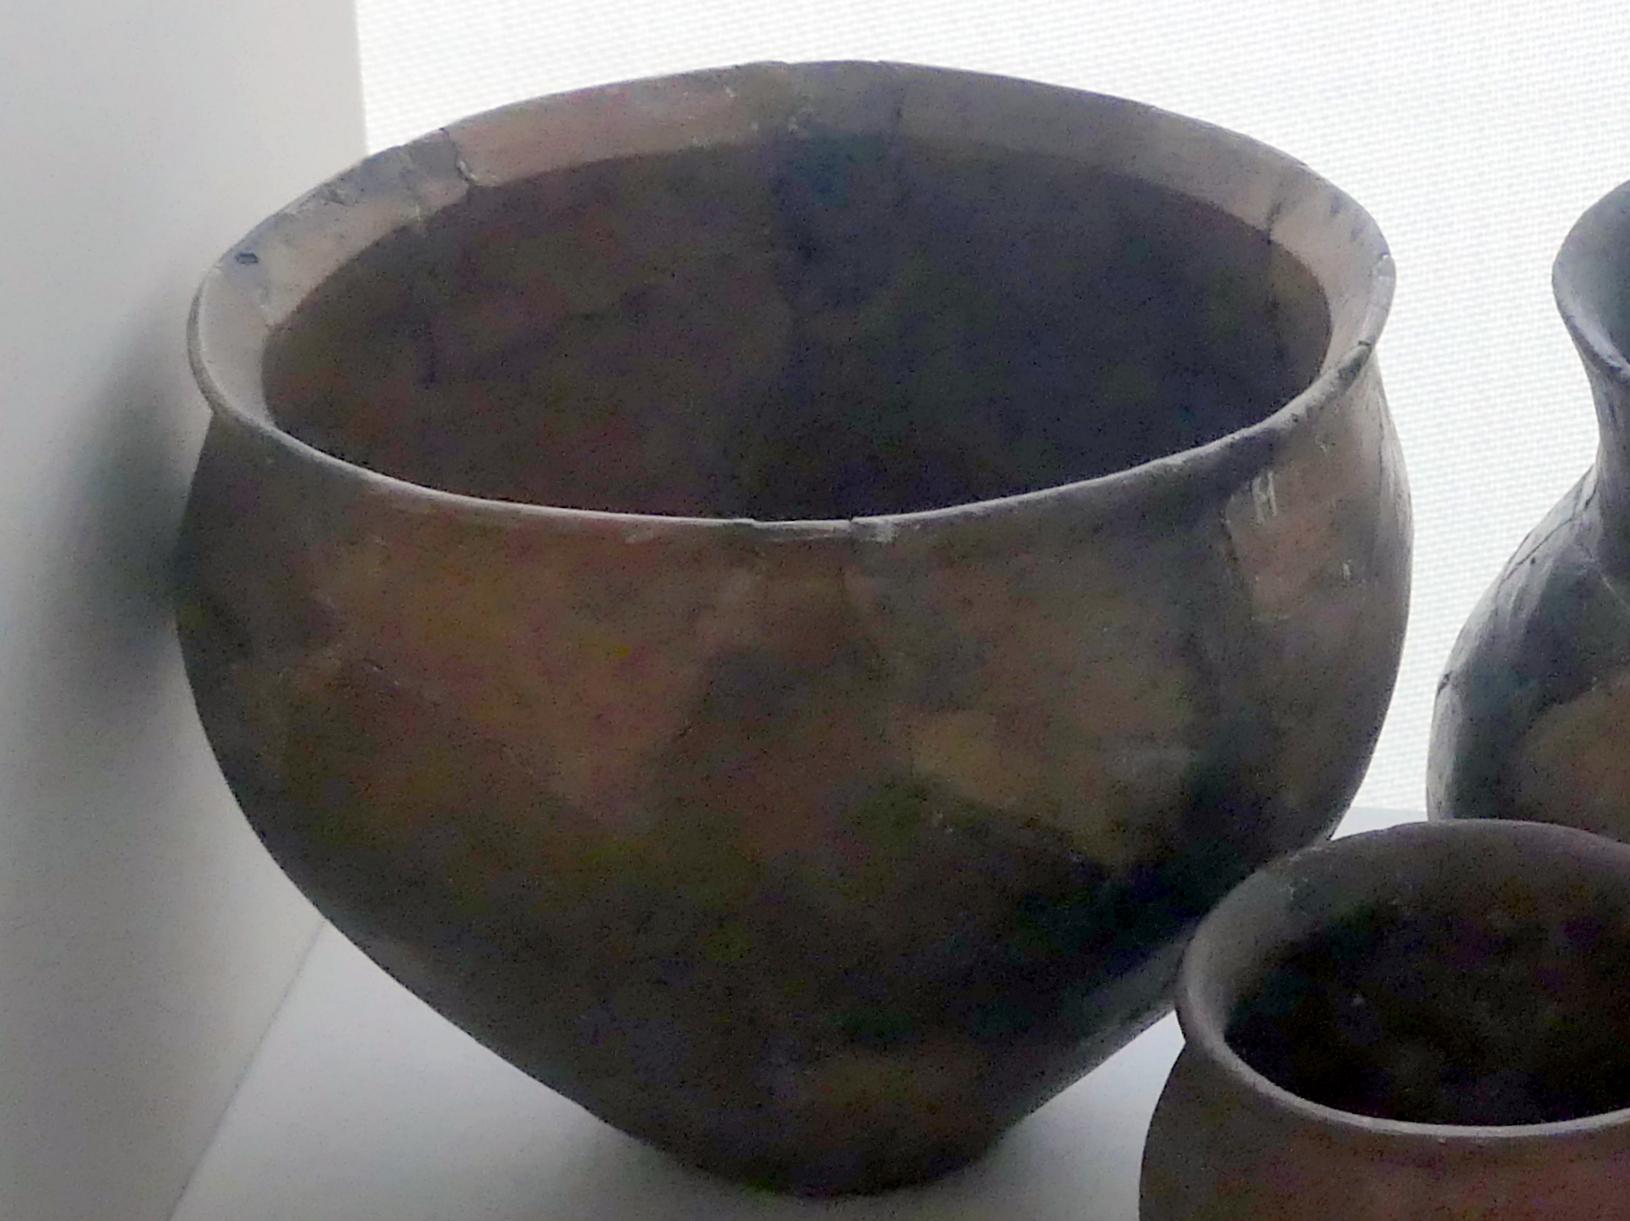 Topf, Urnenfelderzeit, 1400 - 700 v. Chr., 1200 - 800 v. Chr., Bild 1/2